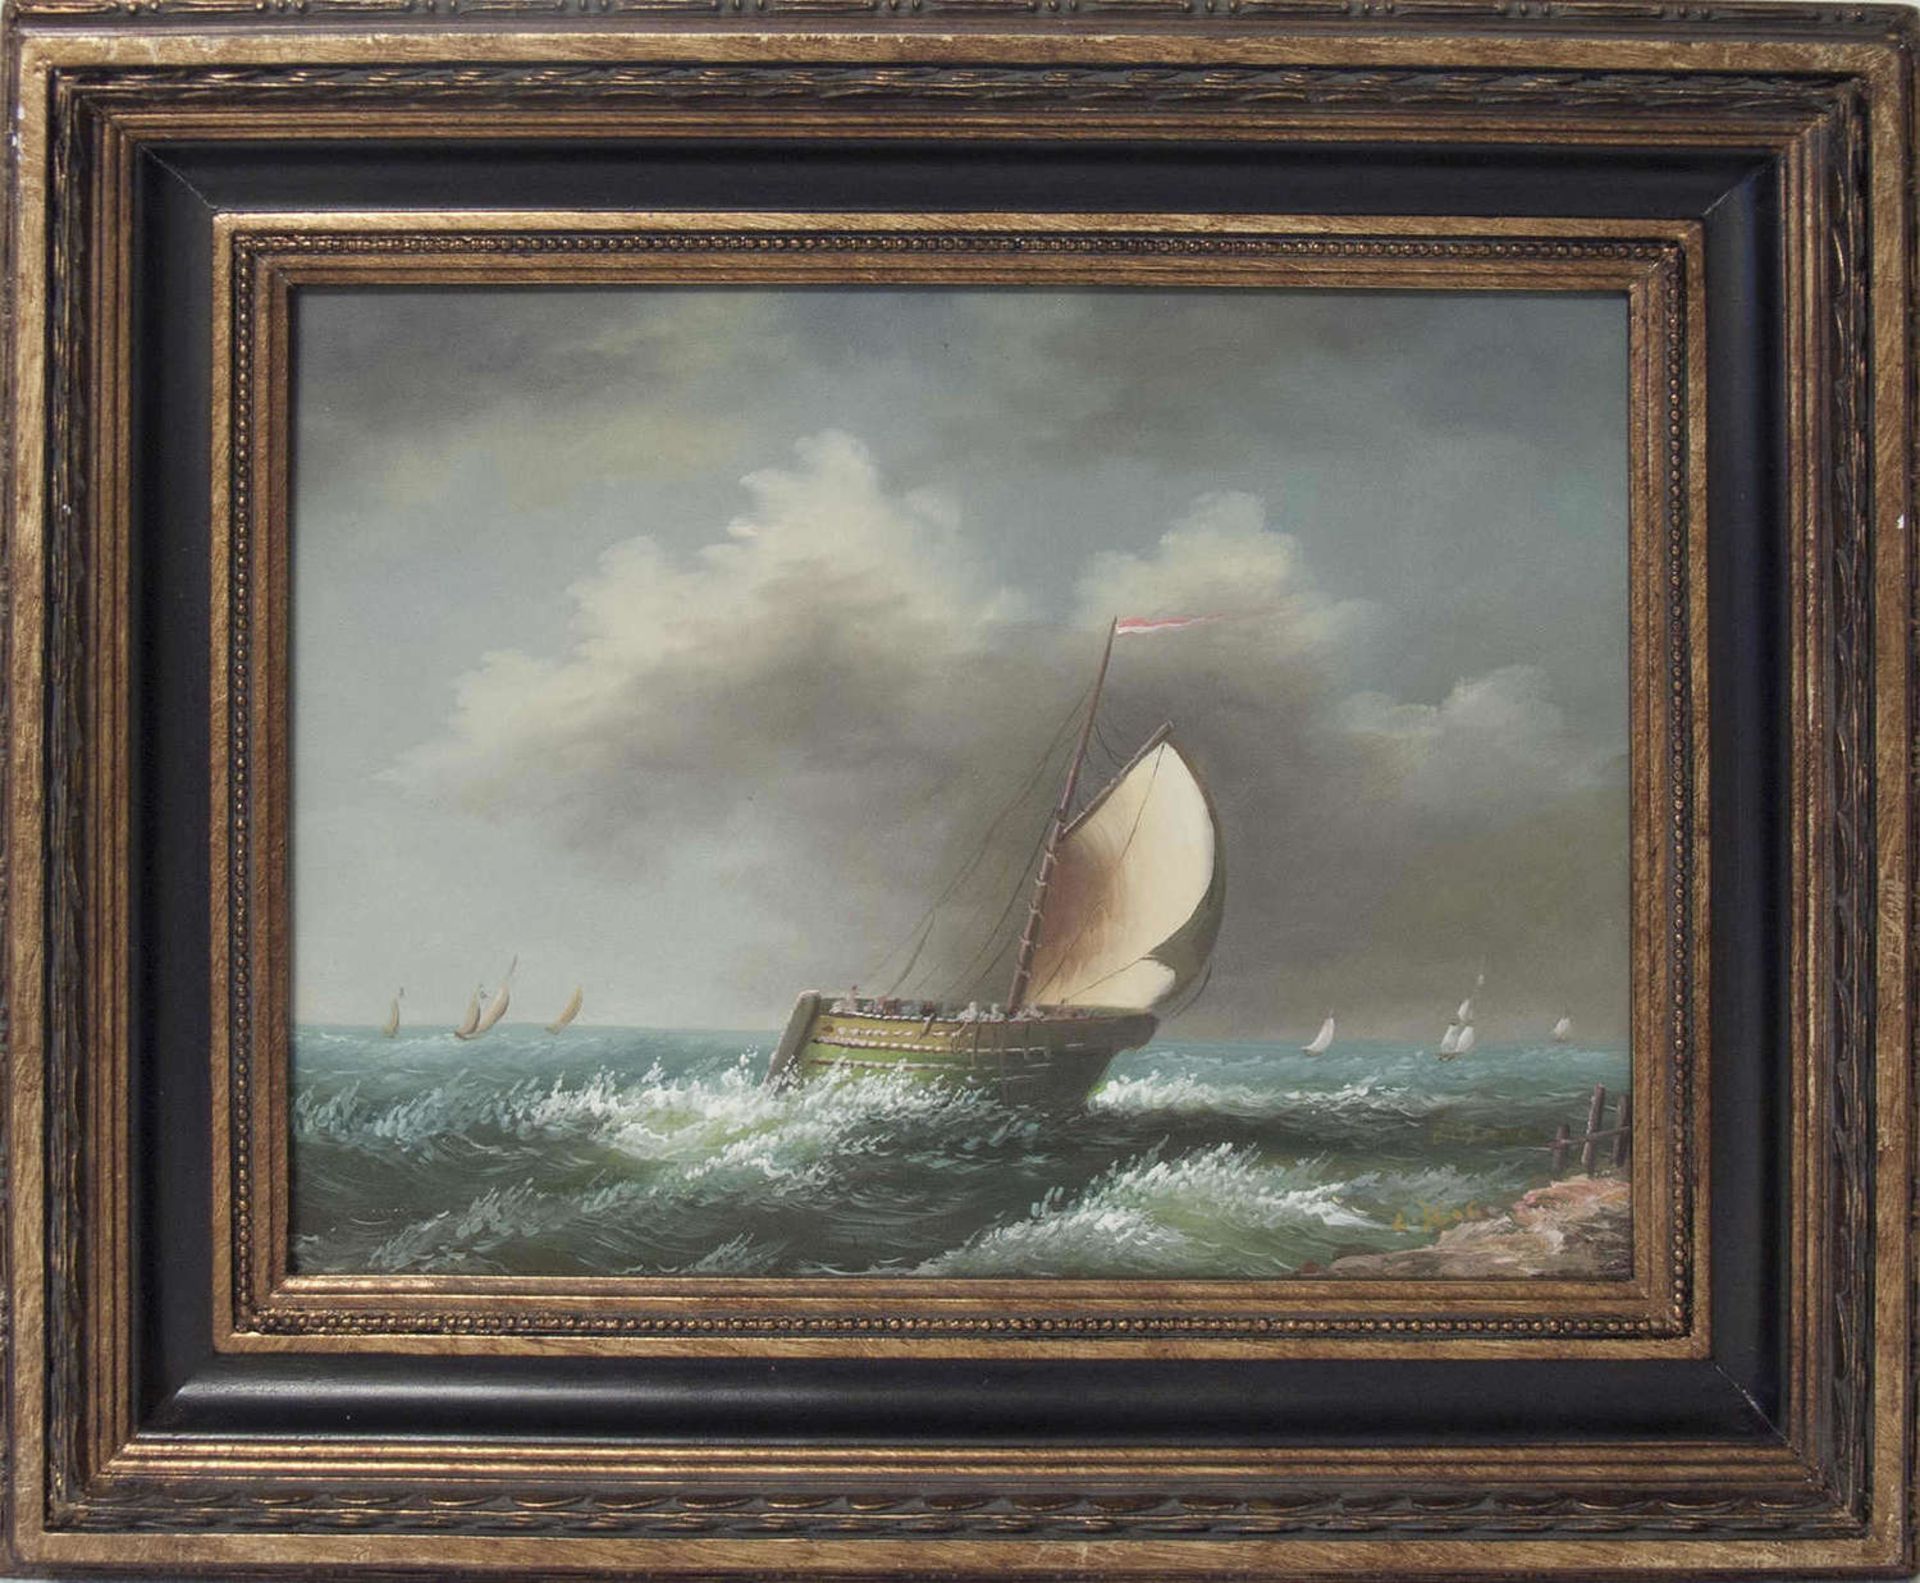 Ölgemälde "Segelschiff vorm Wind". Öl auf Leinwand. Rechts unten signiert. Gerahmt. Maße: ca. 56,5